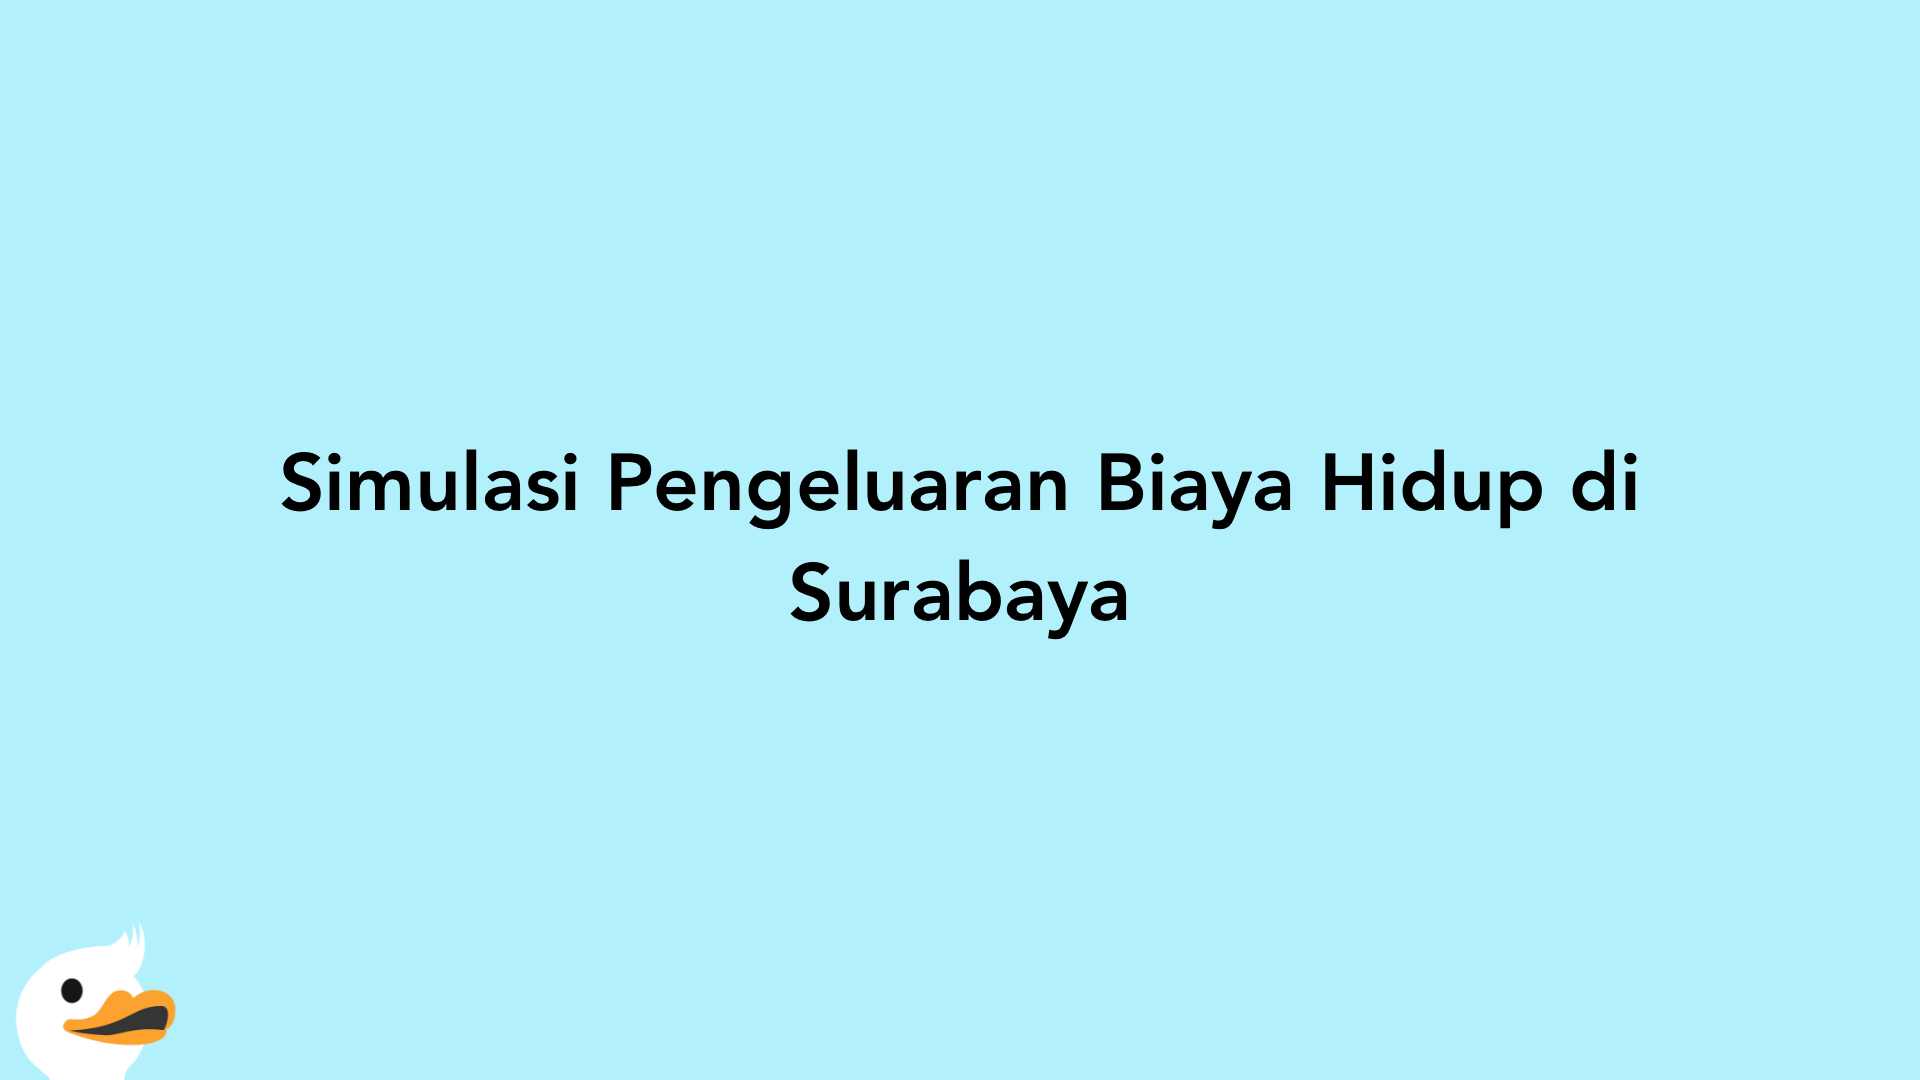 Simulasi Pengeluaran Biaya Hidup di Surabaya